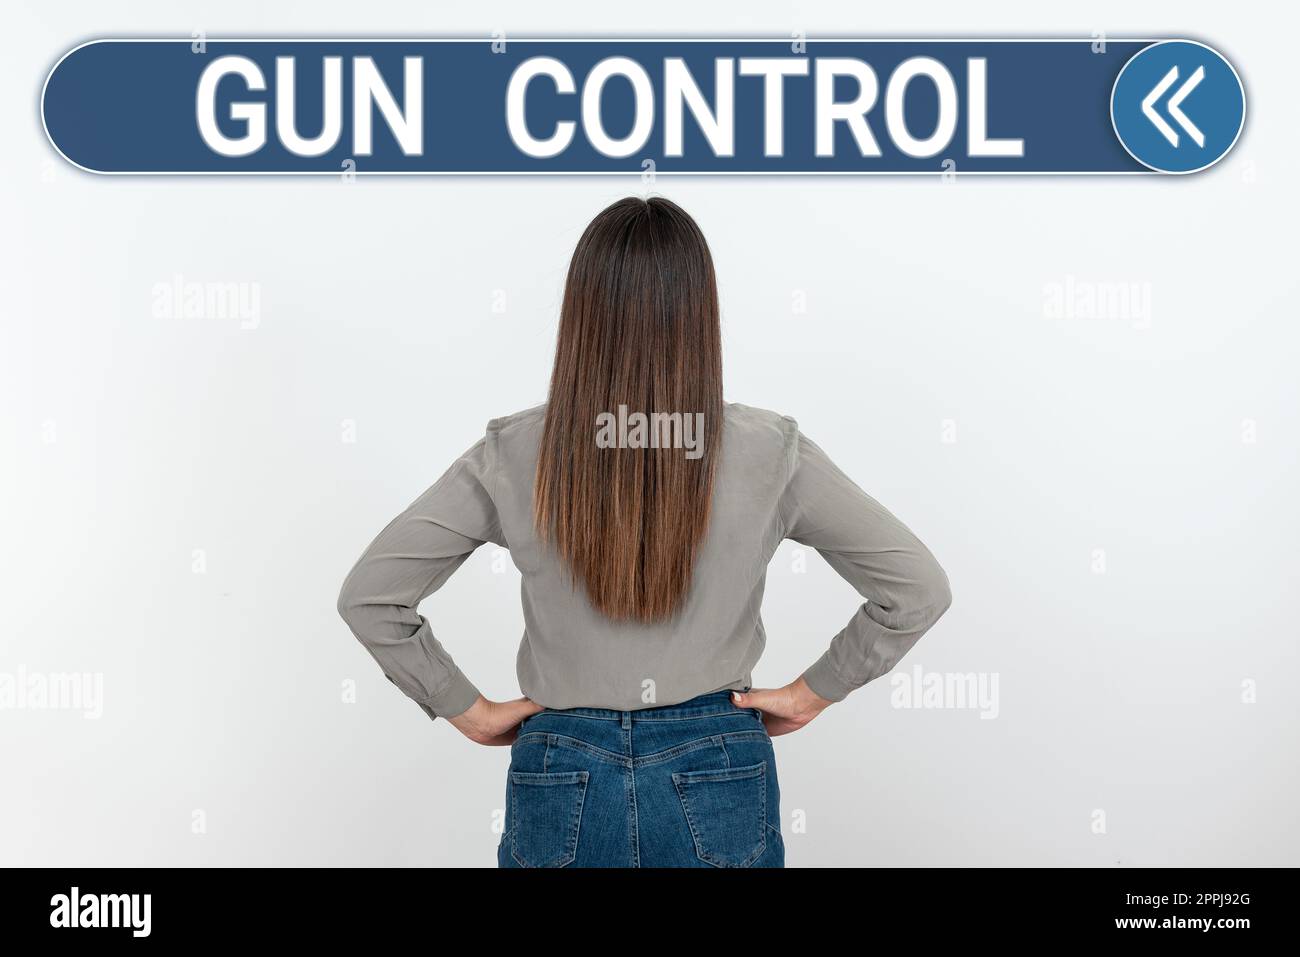 Handgeschriebenes Schild Gun Control. Geschäftsbegriff Rechtsmaßnahme zur Beschränkung des Waffenbesitzes Stockfoto